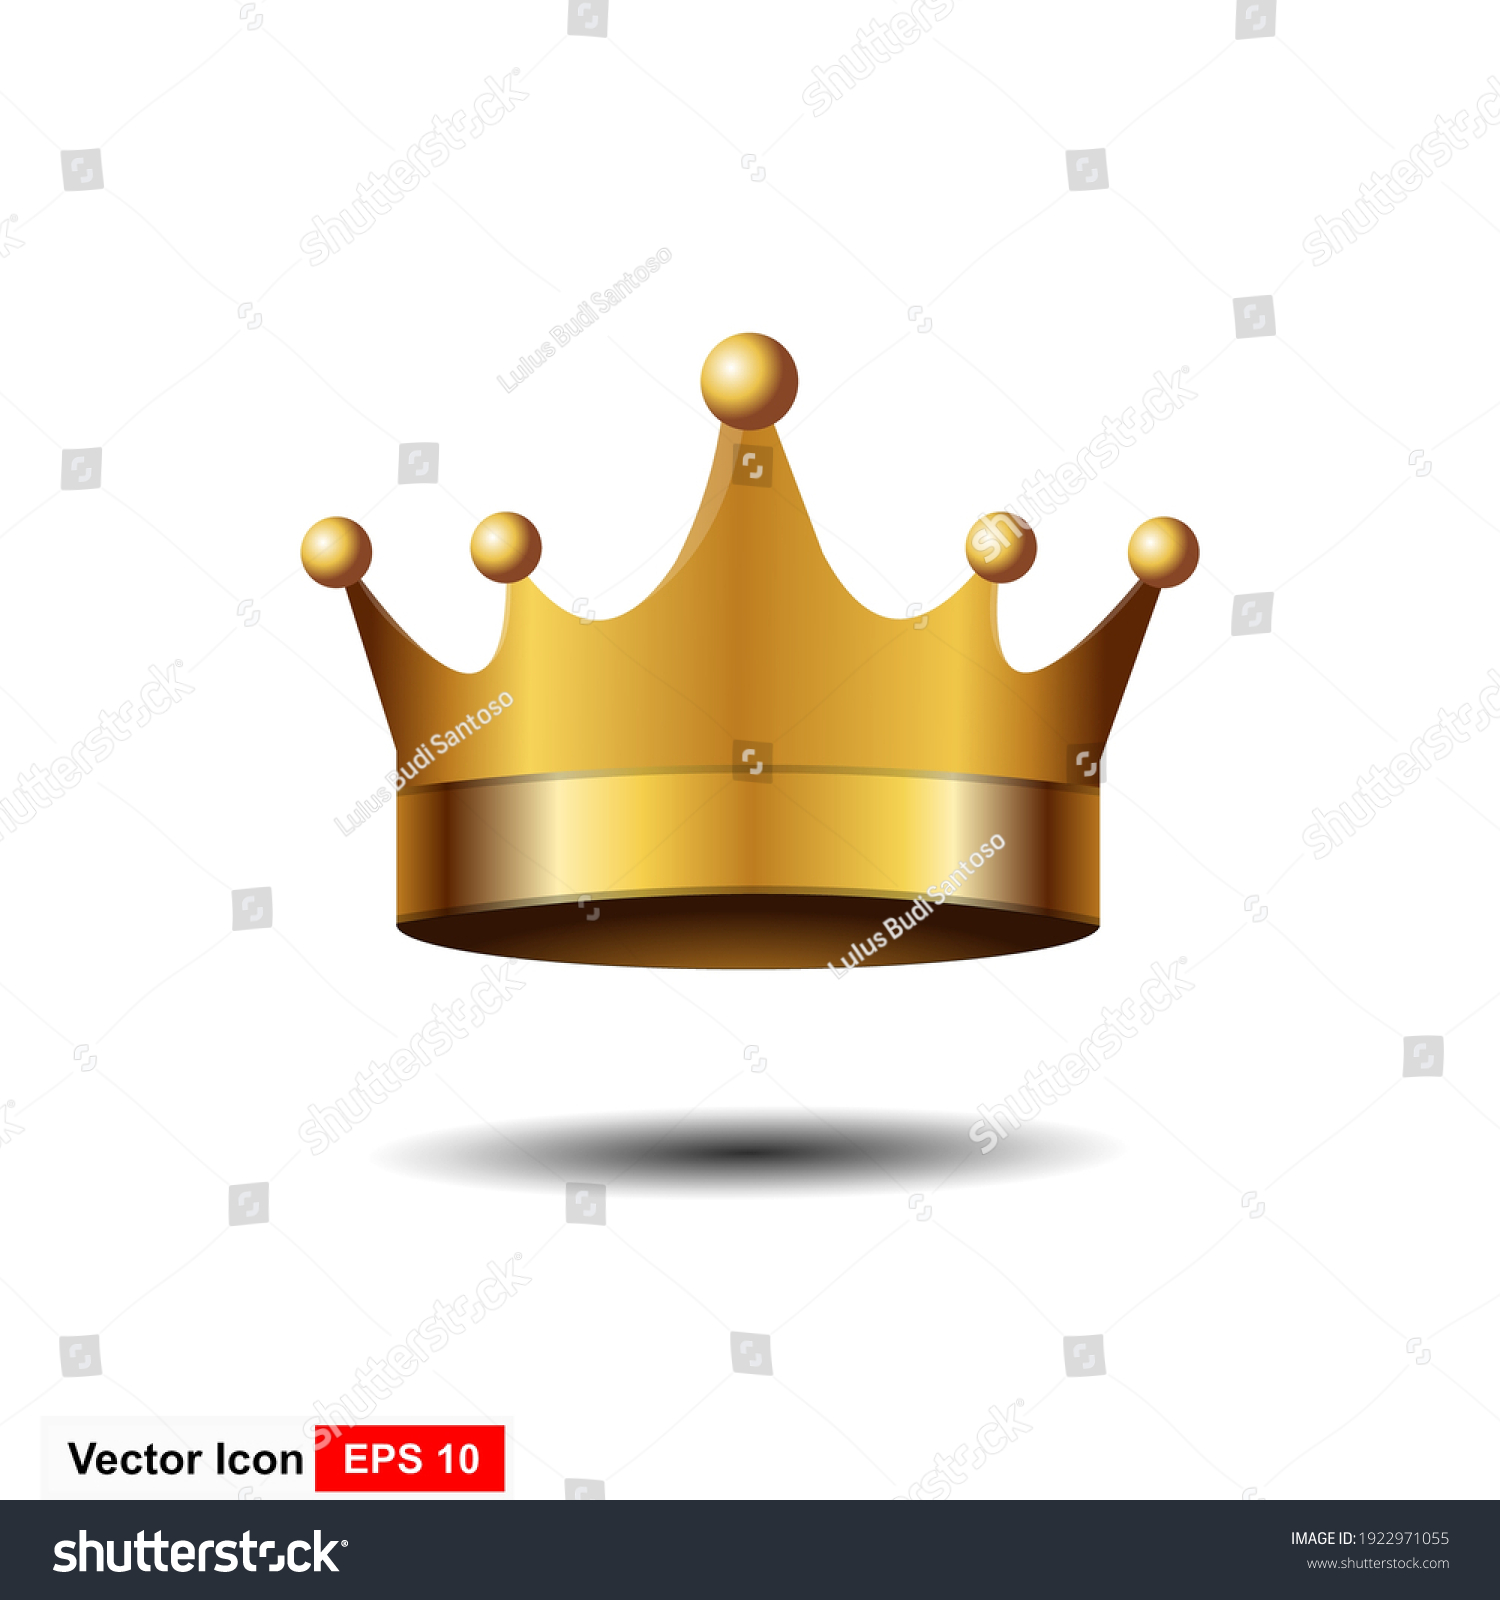 Golden king crown Images, Stock Photos & Vectors | Shutterstock